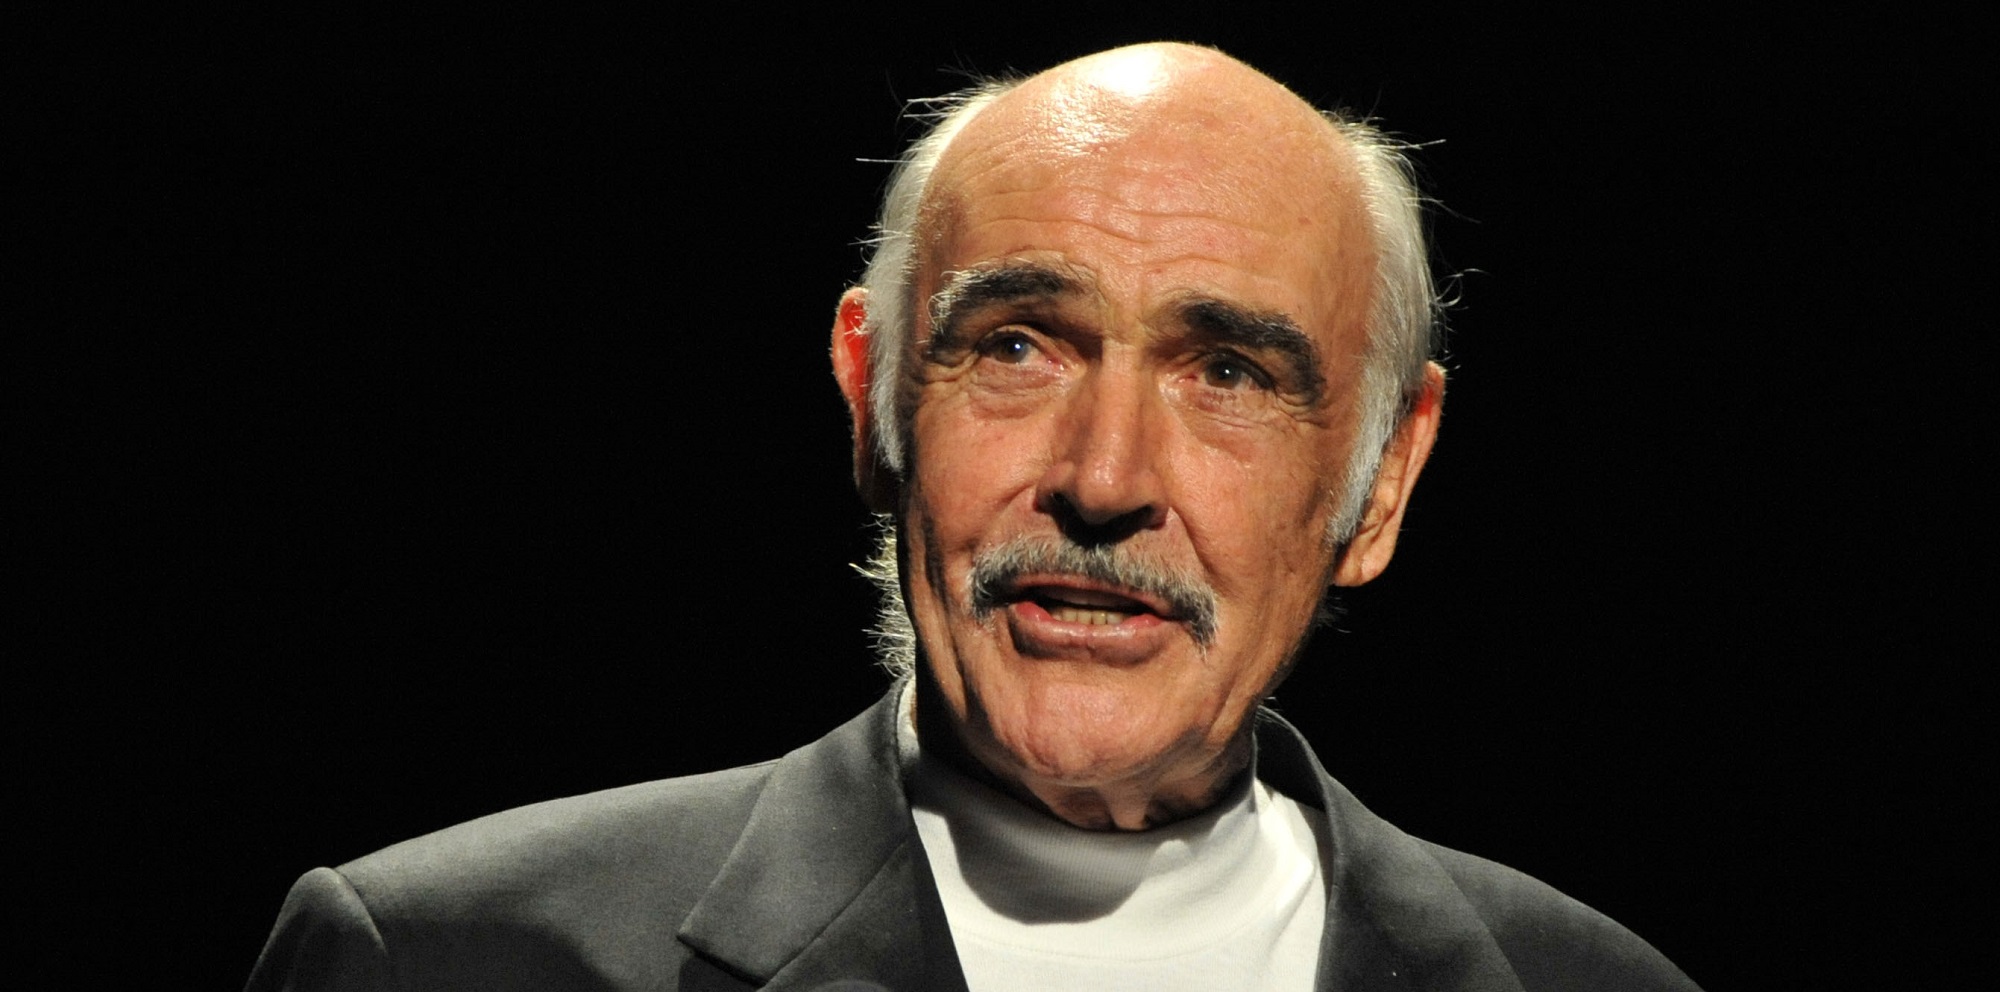 Muere a los 90 años Sean Connery, legendario actor británico que interpretó a James Bond